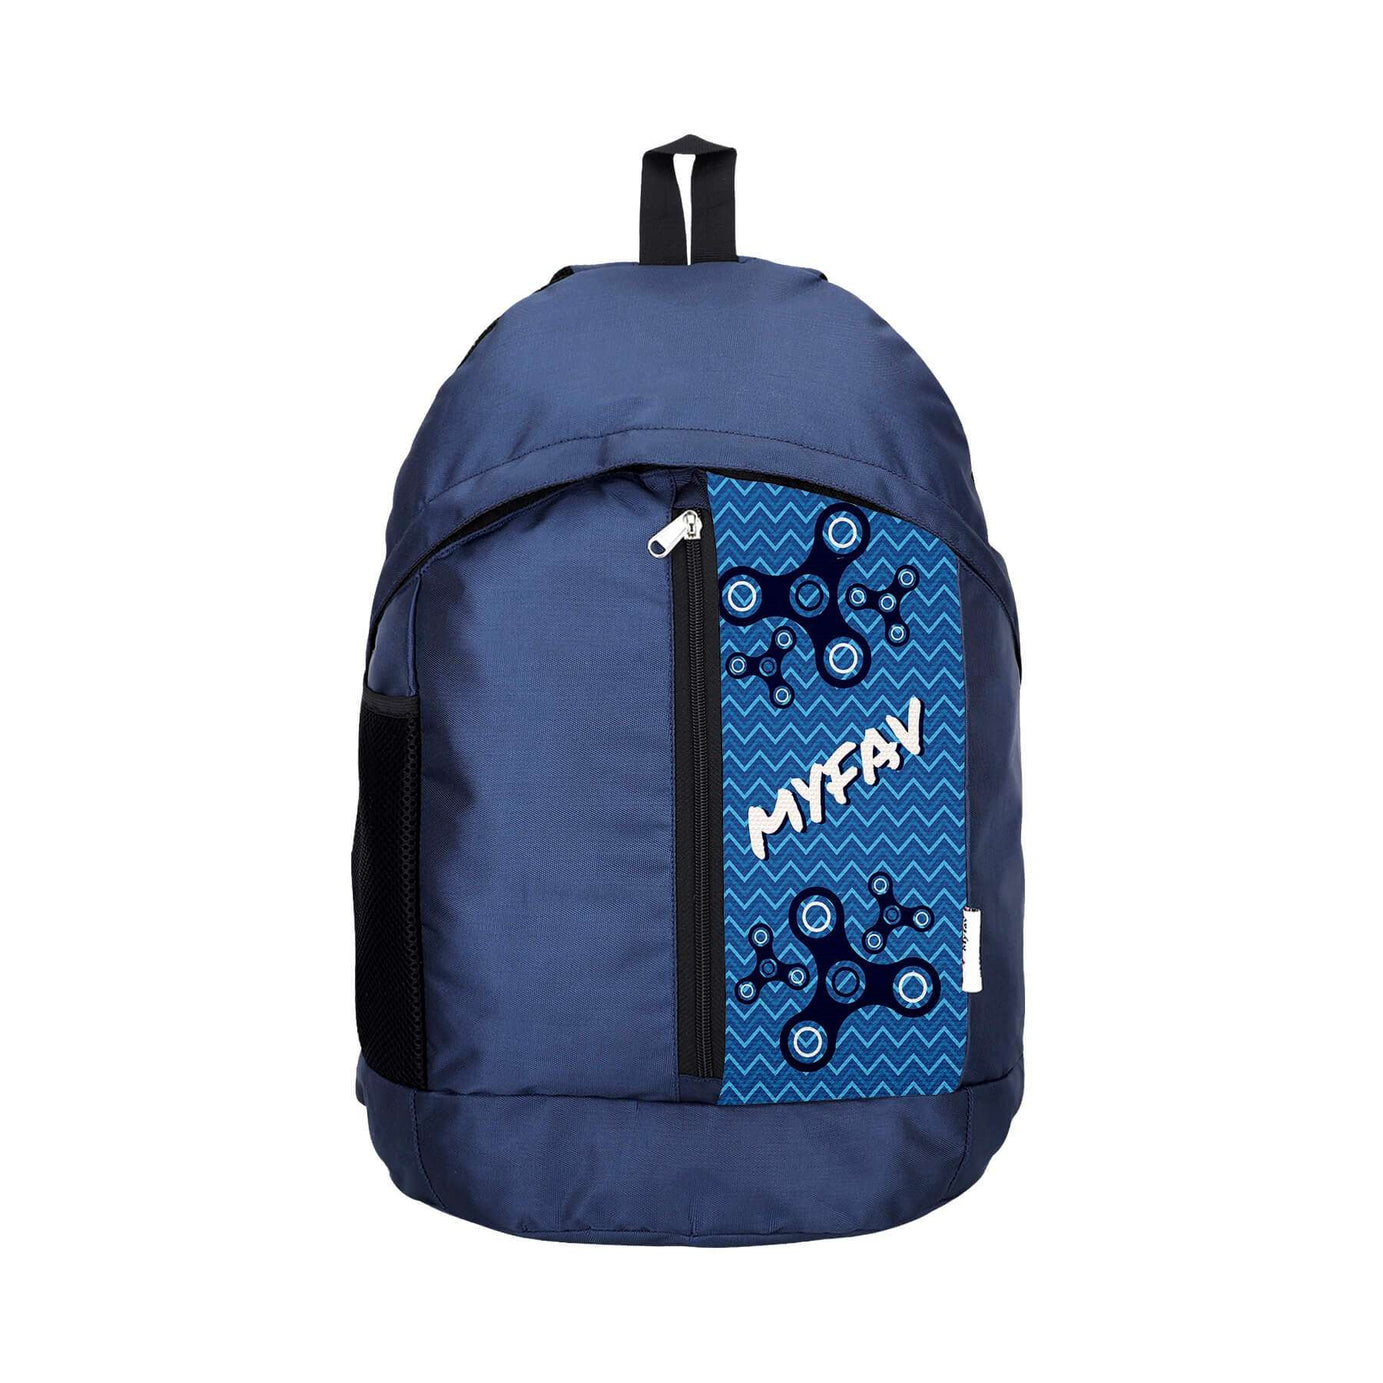 My Fav 21 L Navy Blue Laptop Backpack for Men Women / College Bag for Boys Girls / Office Bag